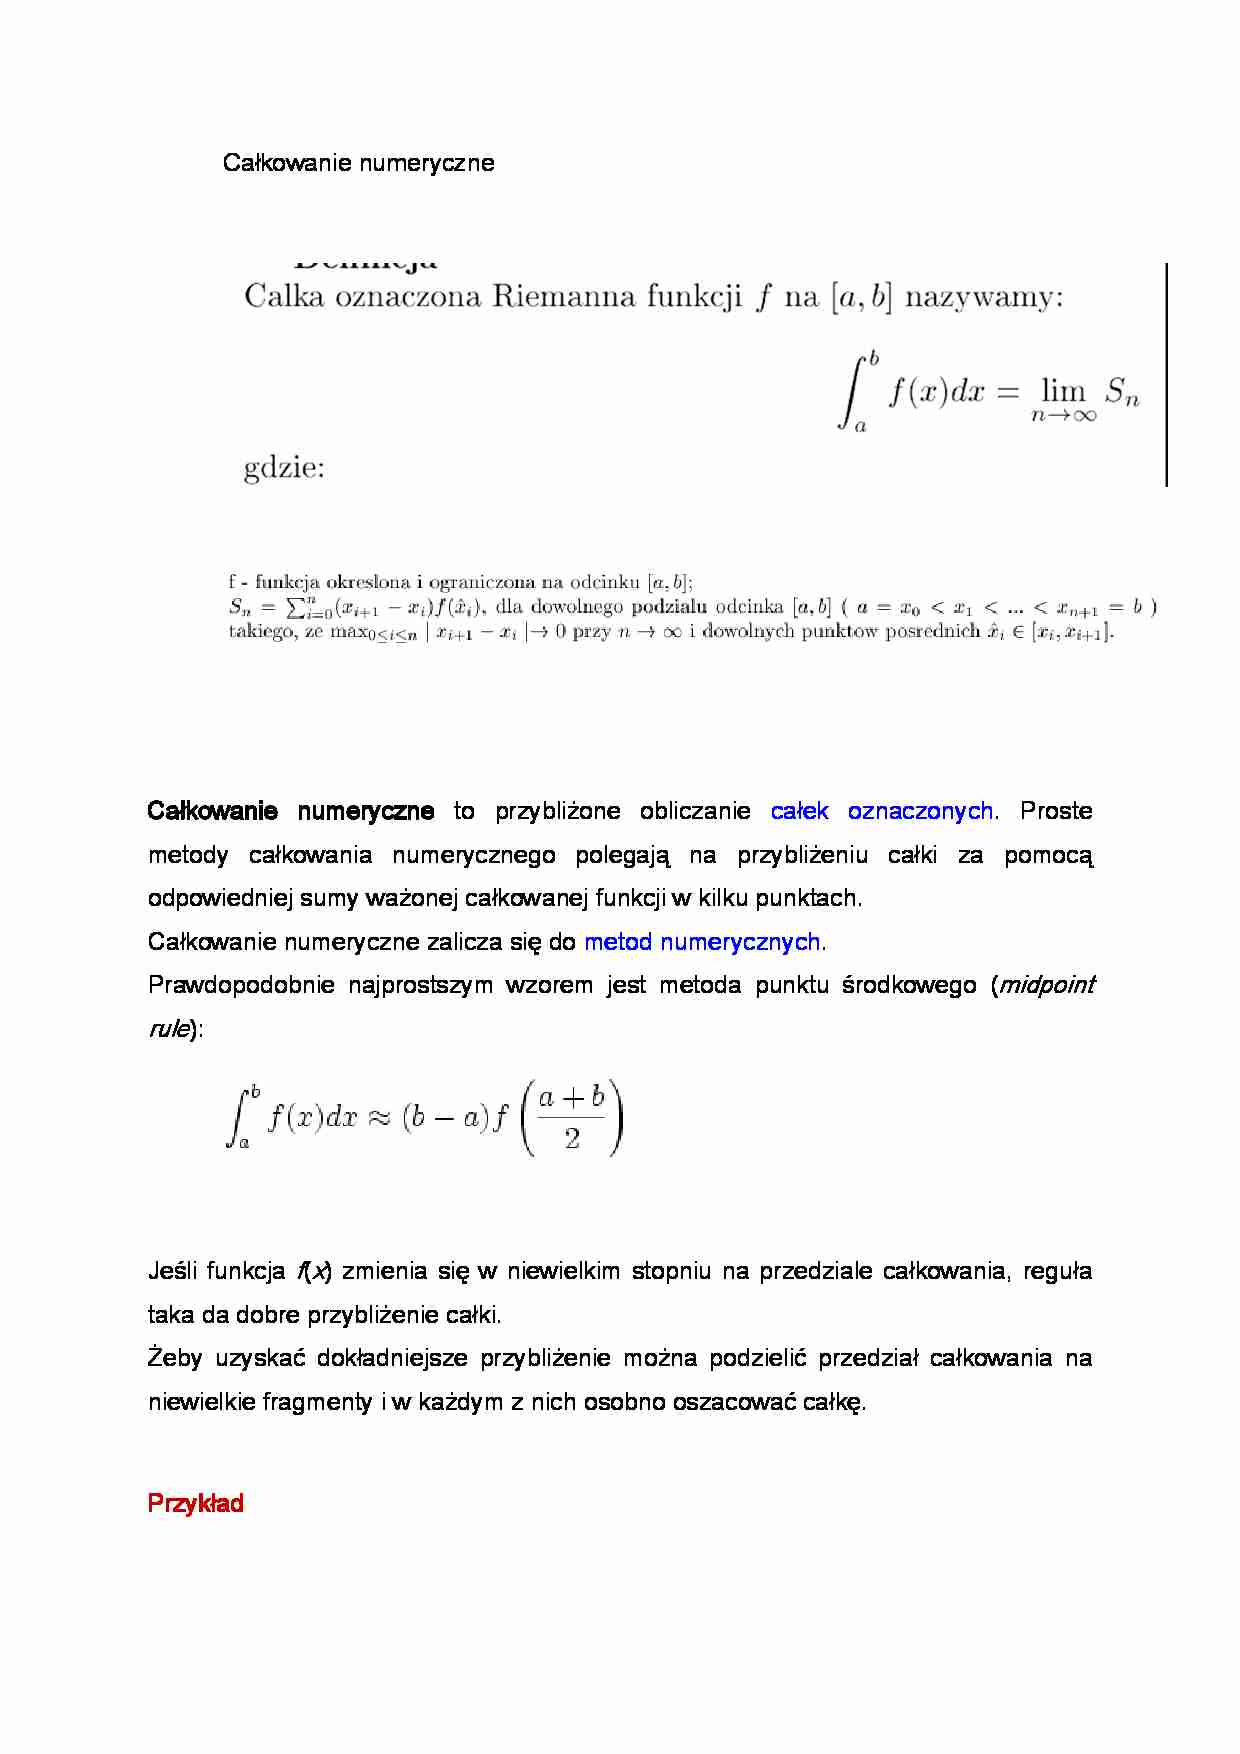 Całkowanie numeryczne - wykład - metody - strona 1